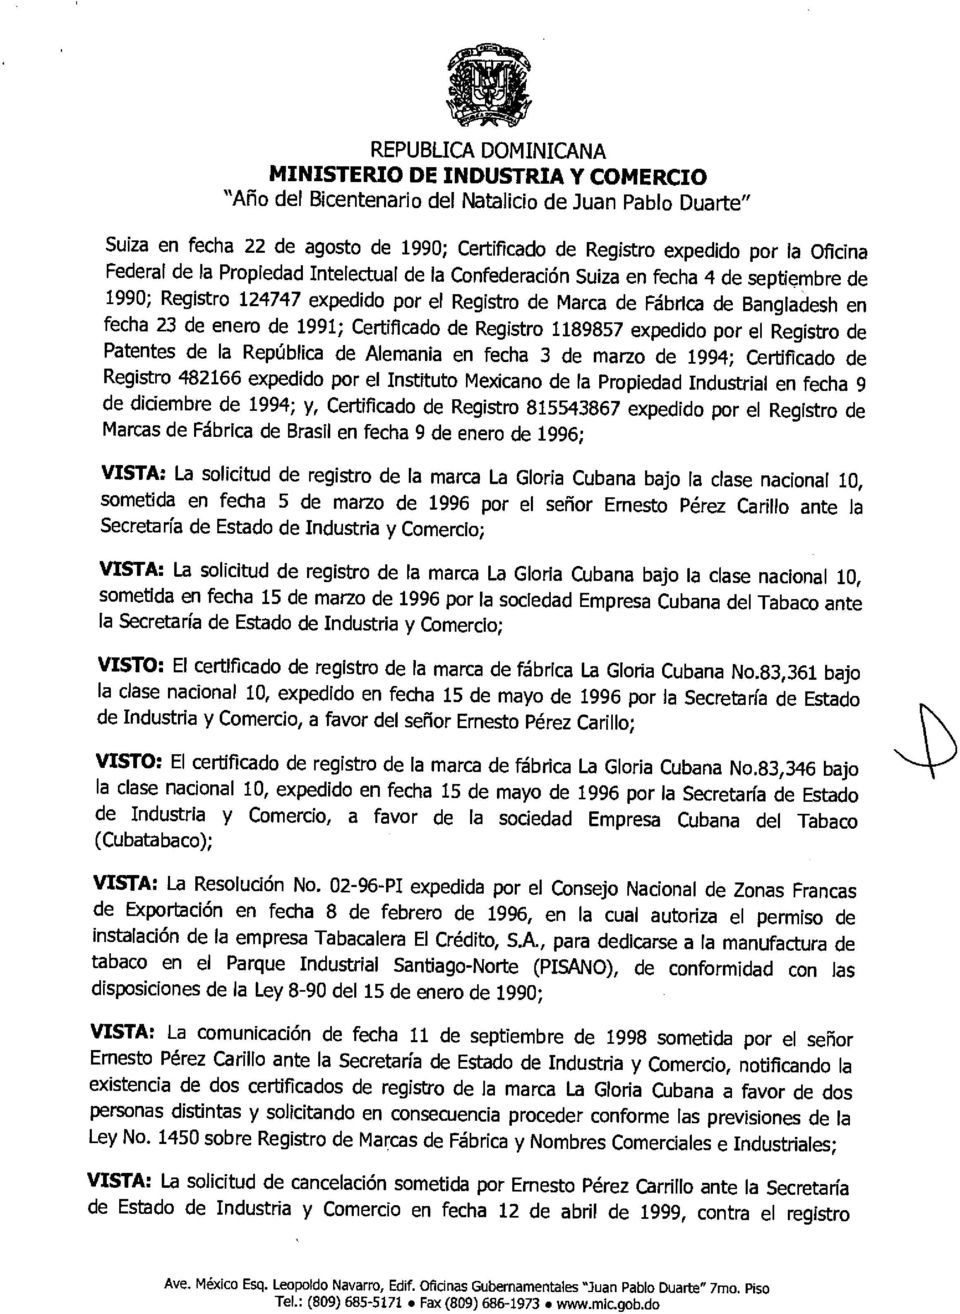 marzo de 1994; Certificado de Registro 482166 expedido por el Instituto Mexicano de la Propiedad Industrial en fecha 9 de diciembre de 1994; y, Certificado de Registro 815543867 expedido por el